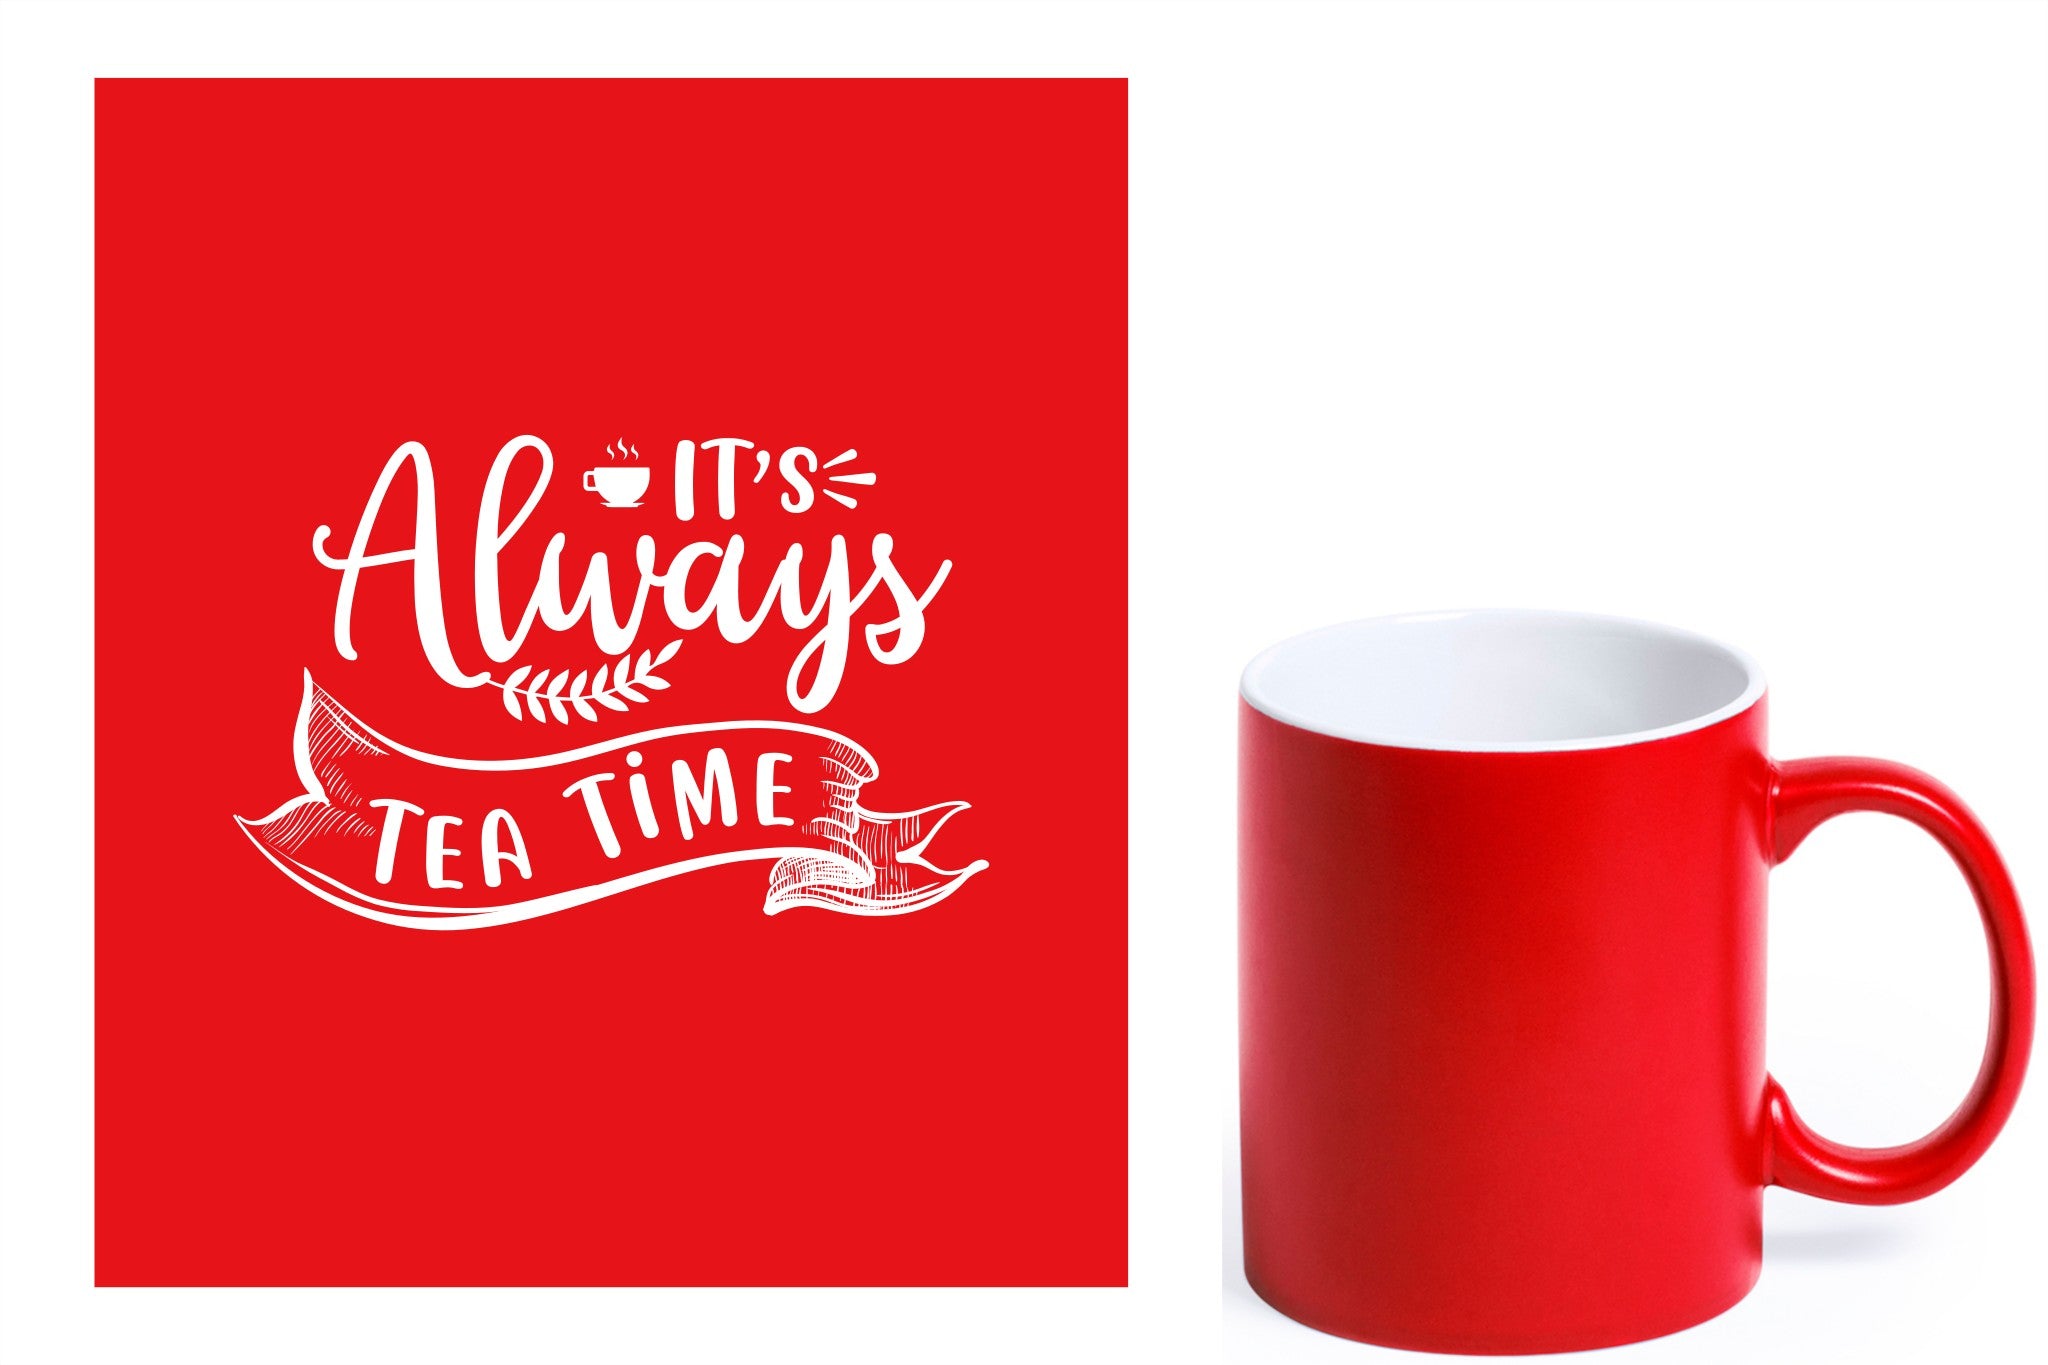 rode keramische mok met witte gravure  'It's always tea time'.